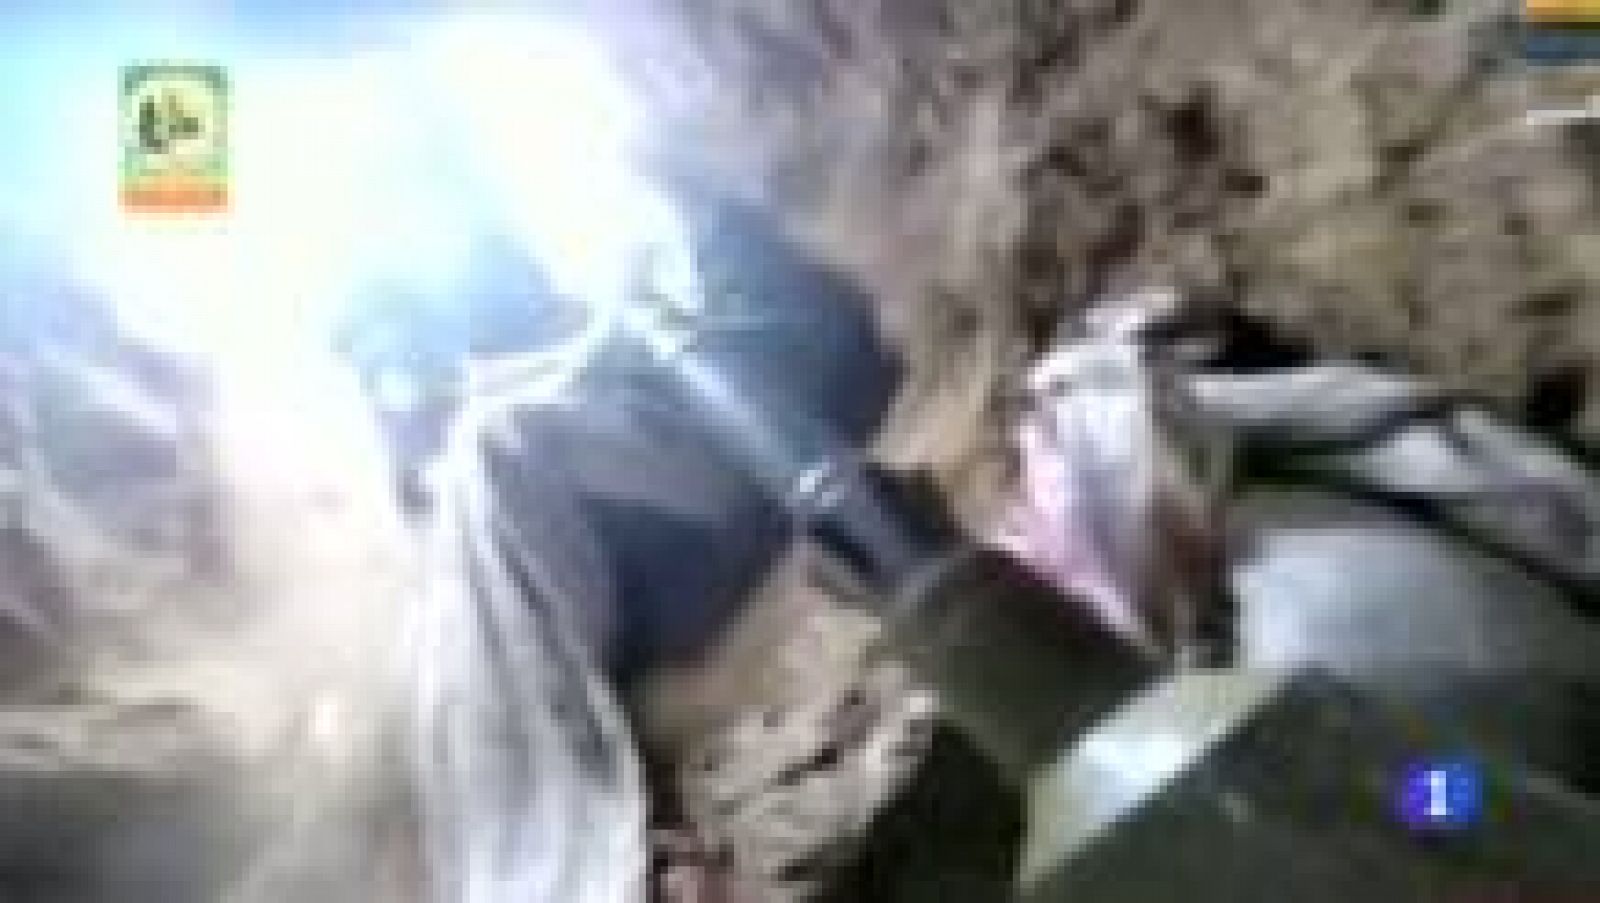  Hamás muestra un ataque a Israel a través de sus túneles